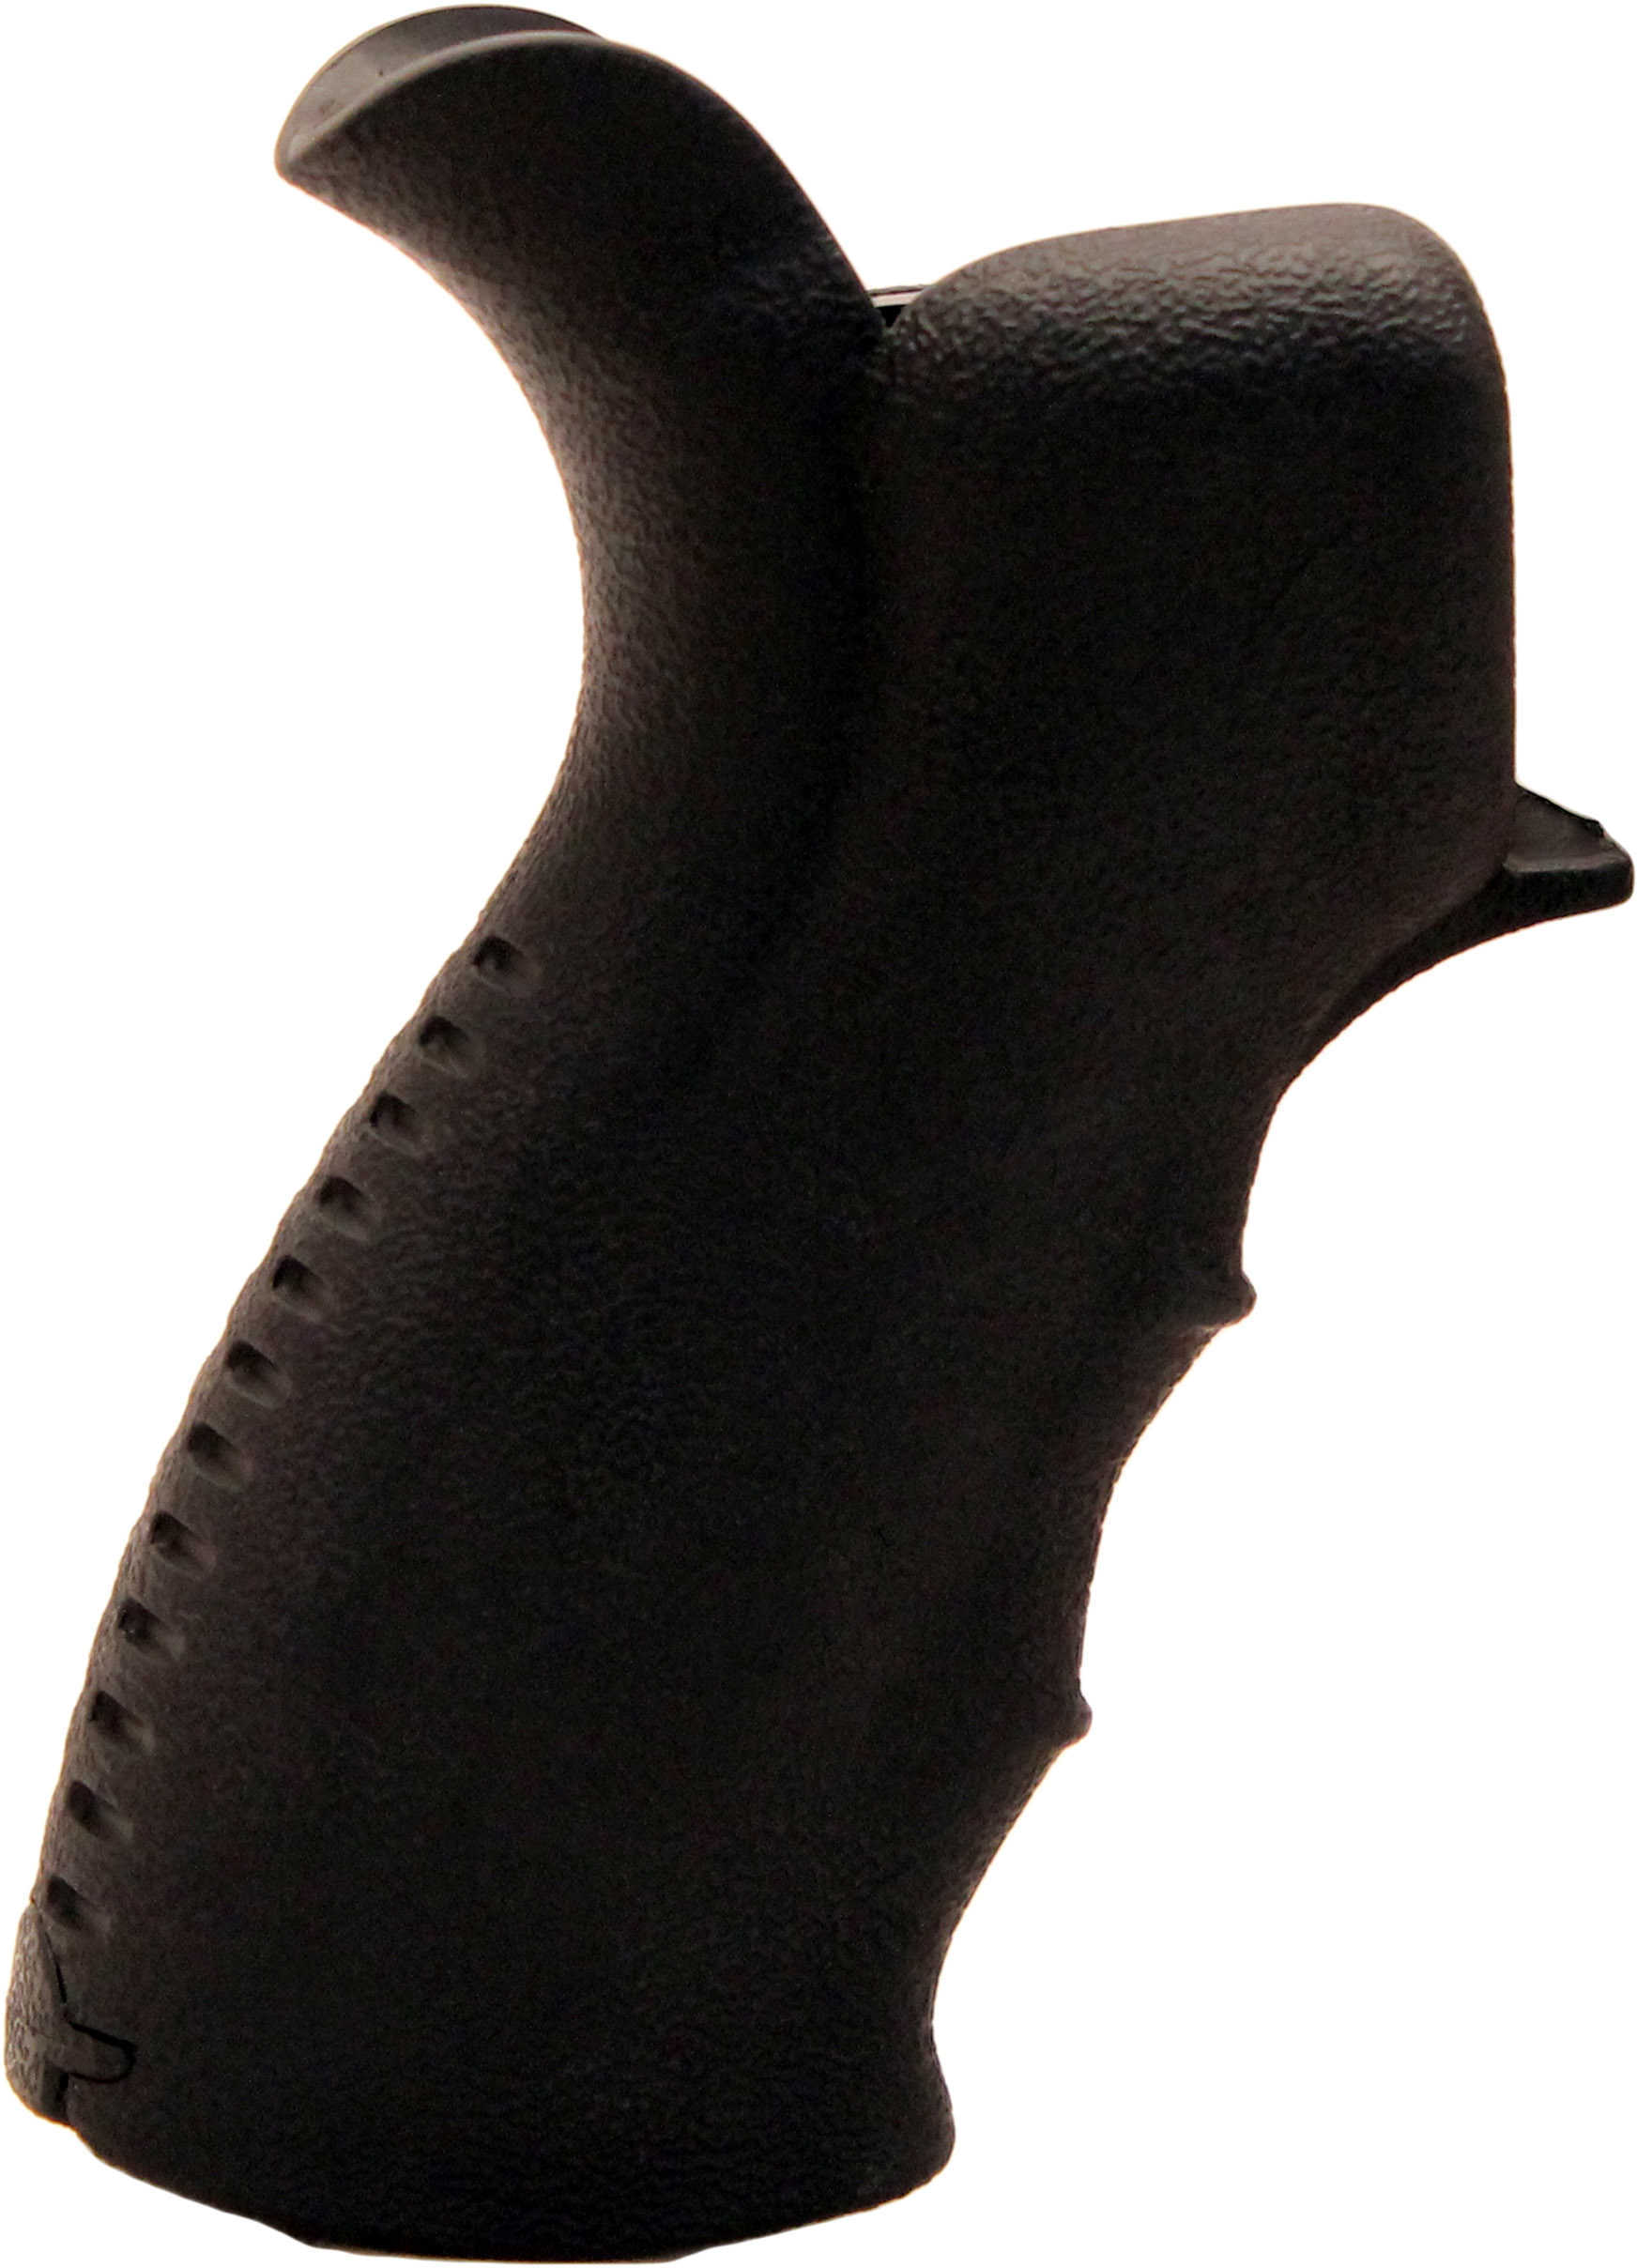 Leapers Inc. UTG AR15 Ergonomic Pistol Grip Black Md: RB-TPG269B